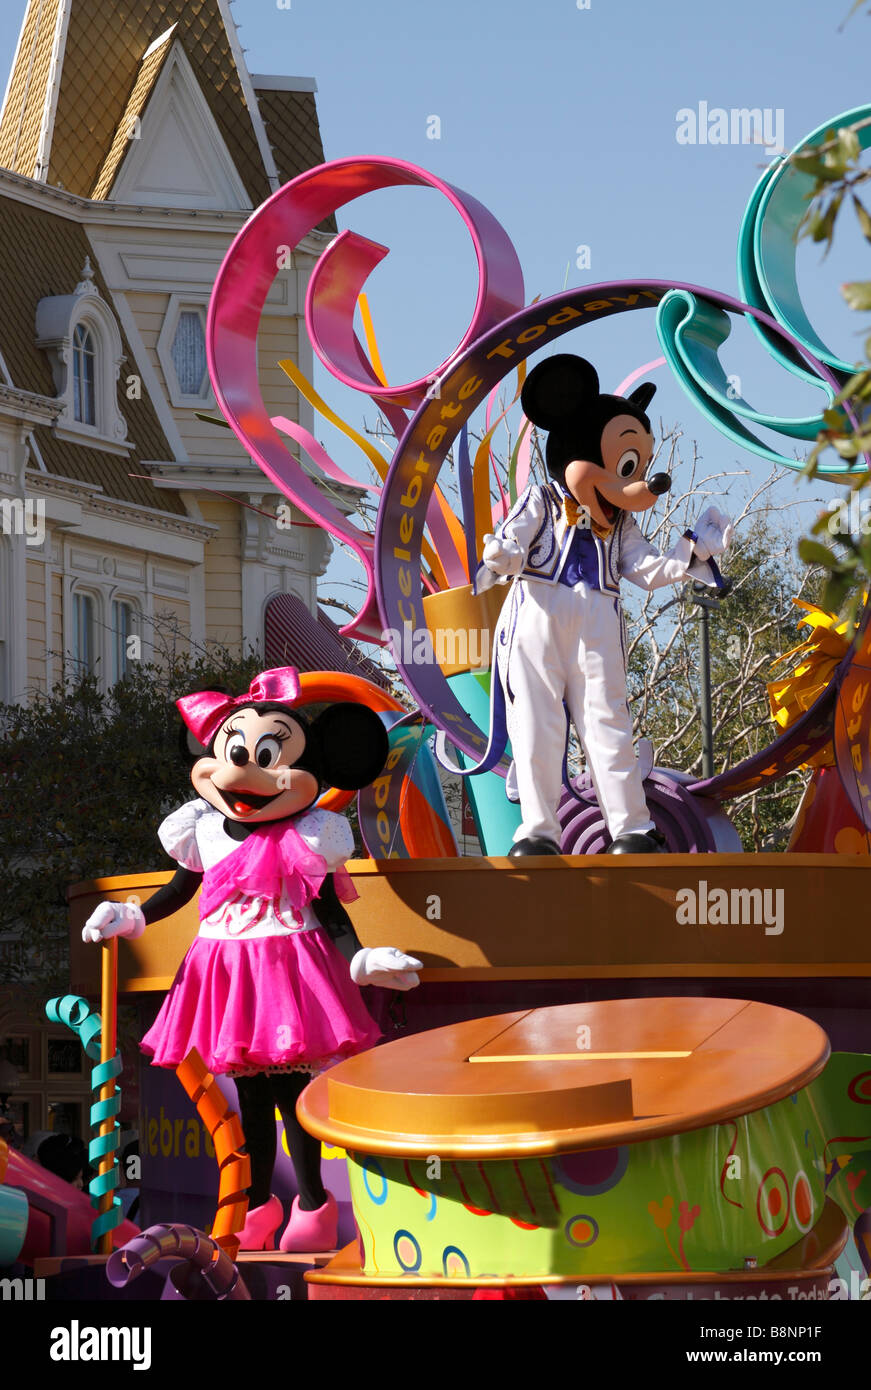 Topolino e Minnie Mouse su parade float, MainStreet USA, Walt Disney World il Parco a Tema del Regno Magico, Orlando, Florida, Stati Uniti d'America Foto Stock